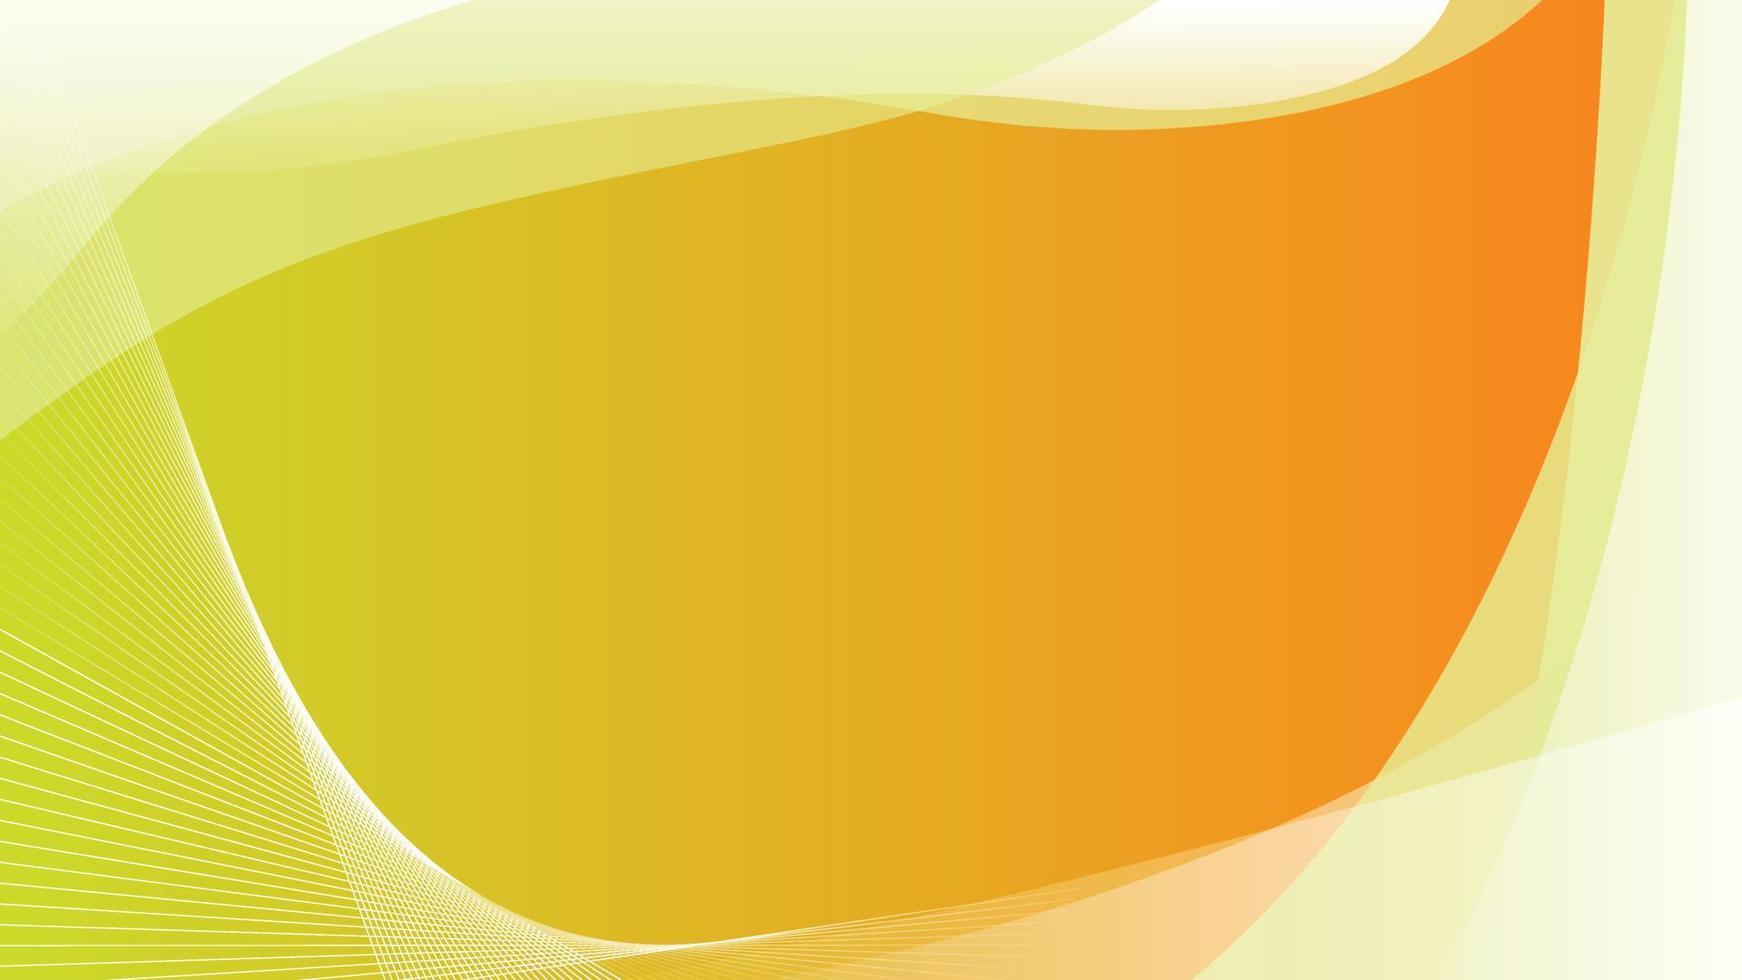 Geschäftspräsentation gelbe Kurve Welle abstrakter moderner Hintergrund mit geometrischen Formen vektor